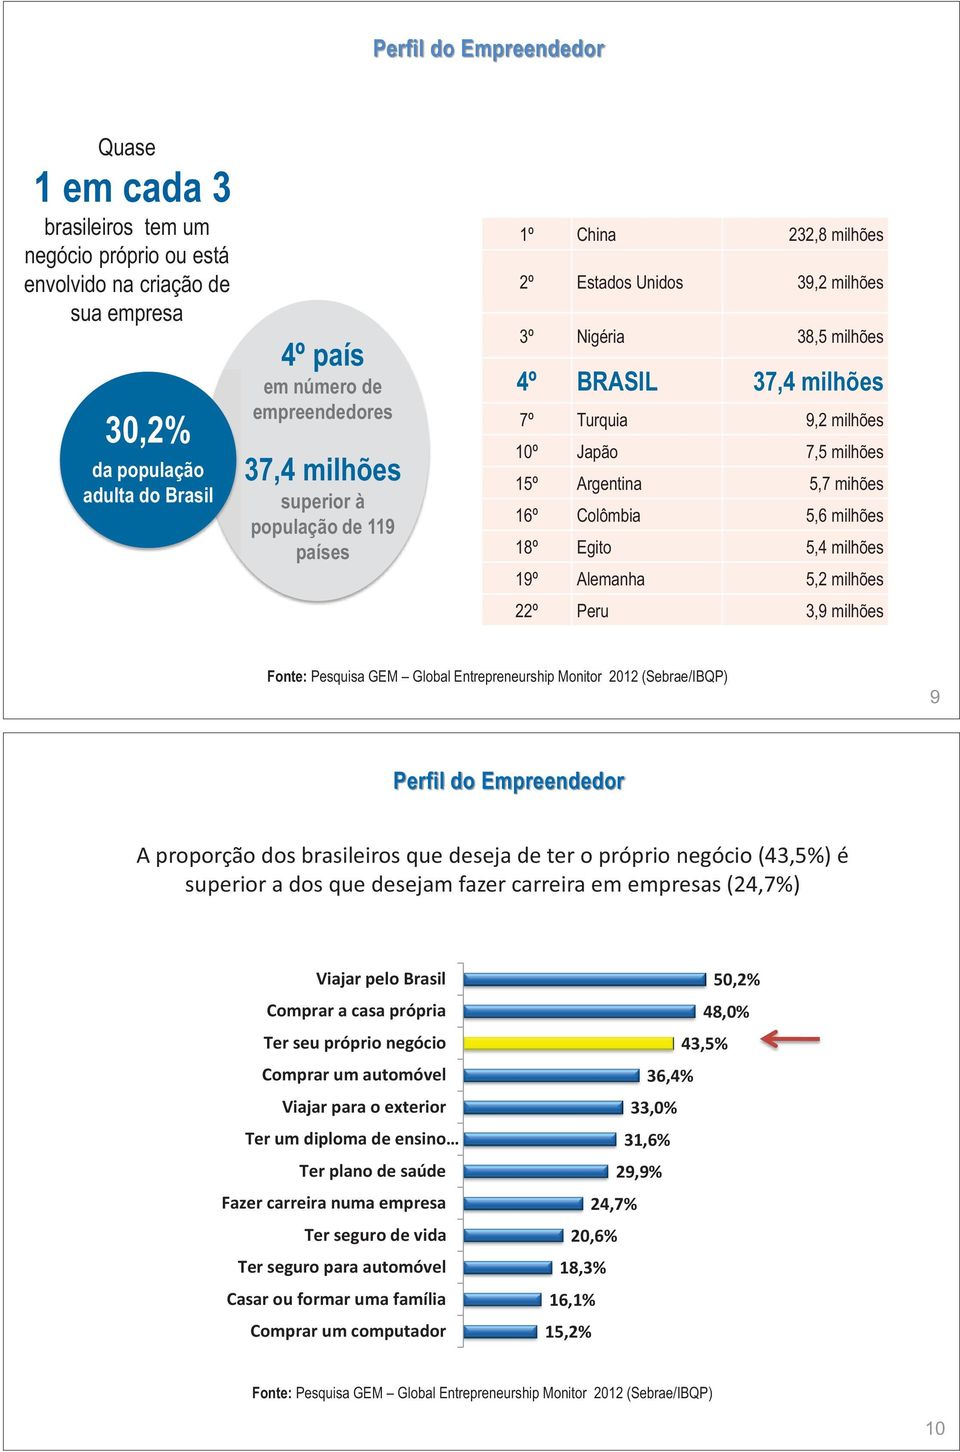 10º Japão 7,5 milhões 15º Argentina 5,7 mihões 16º Colômbia 5,6 milhões 18º Egito 5,4 milhões 19º Alemanha 5,2 milhões 22º Peru 3,9 milhões Fonte: Pesquisa GEM Global Entrepreneurship Monitor 2012